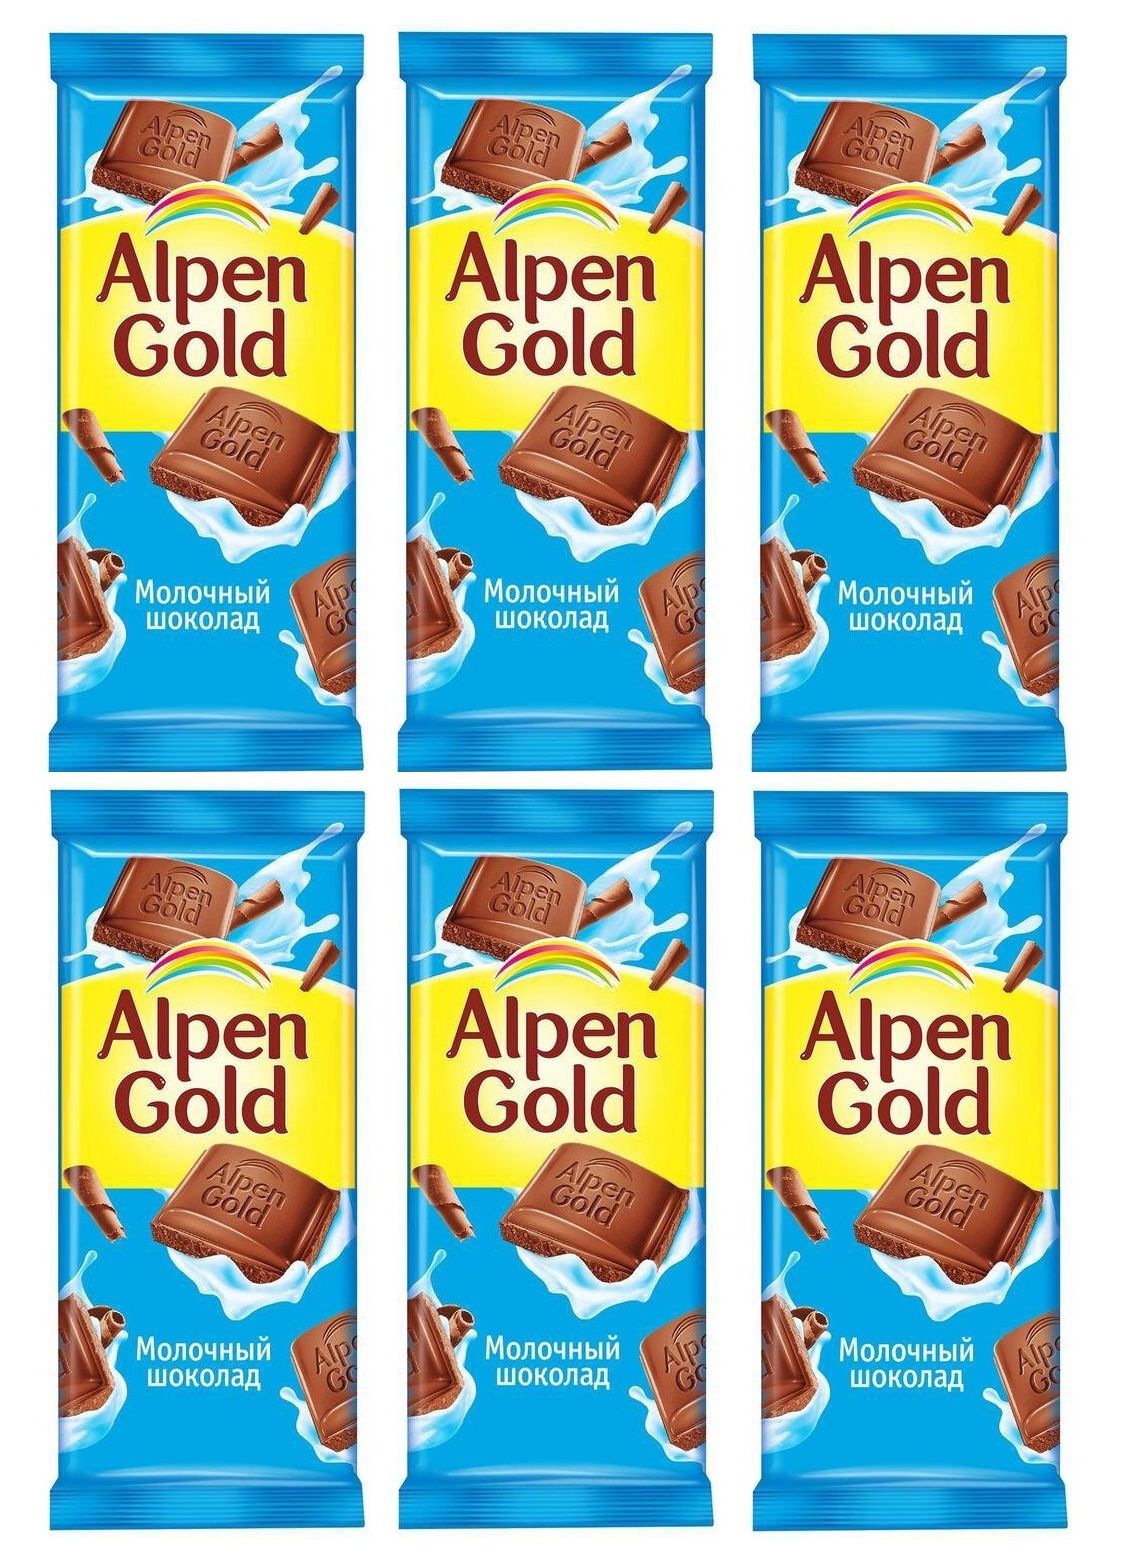 Альпен гольд шоколад ассортимент фото